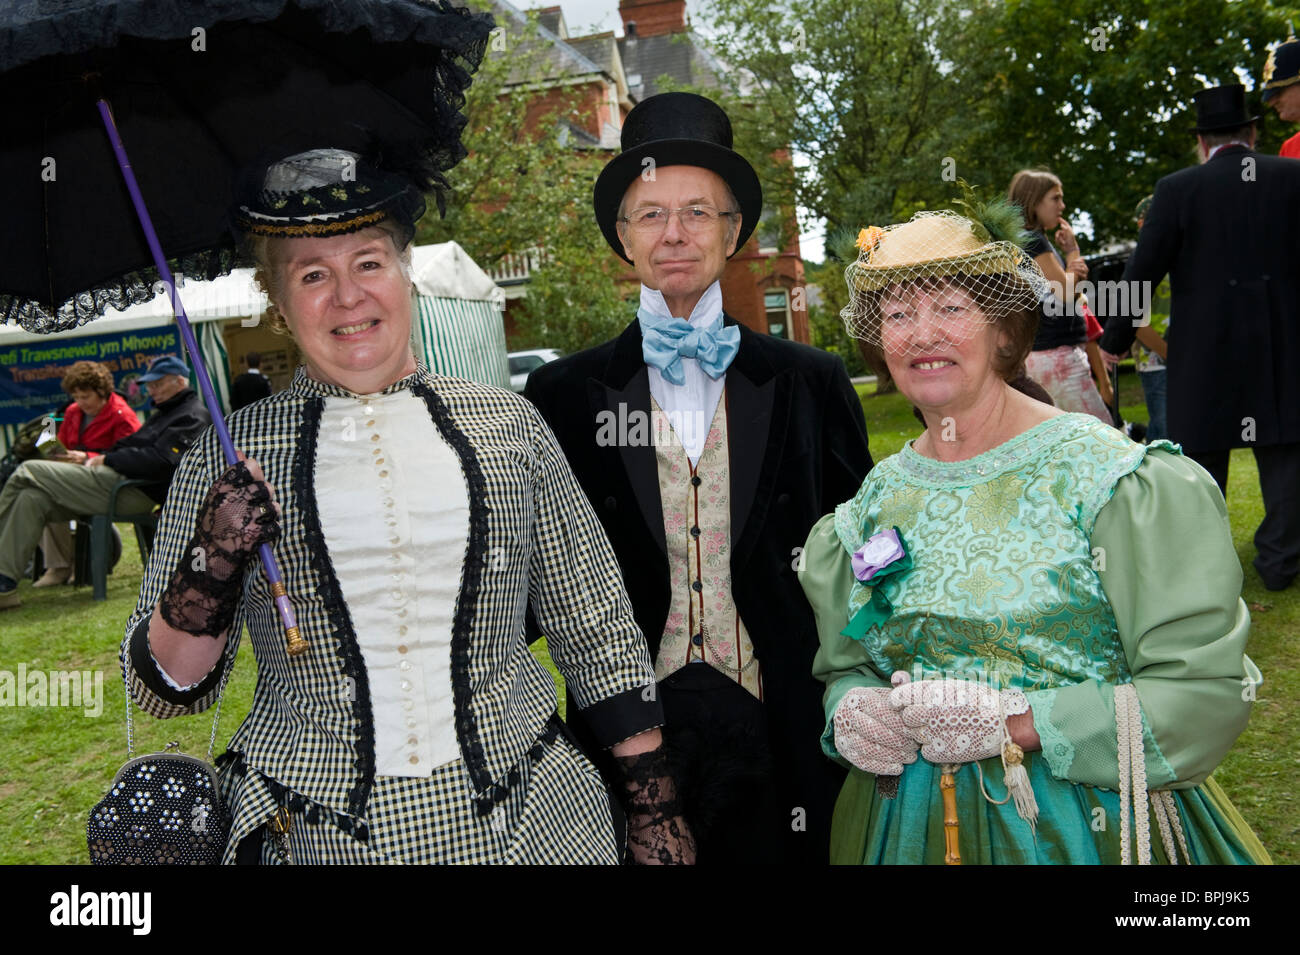 Frau und Mann in historischen Kostümen auf dem jährlichen viktorianischen Festival in Llandrindod Wells Powys Mid Wales UK Stockfoto